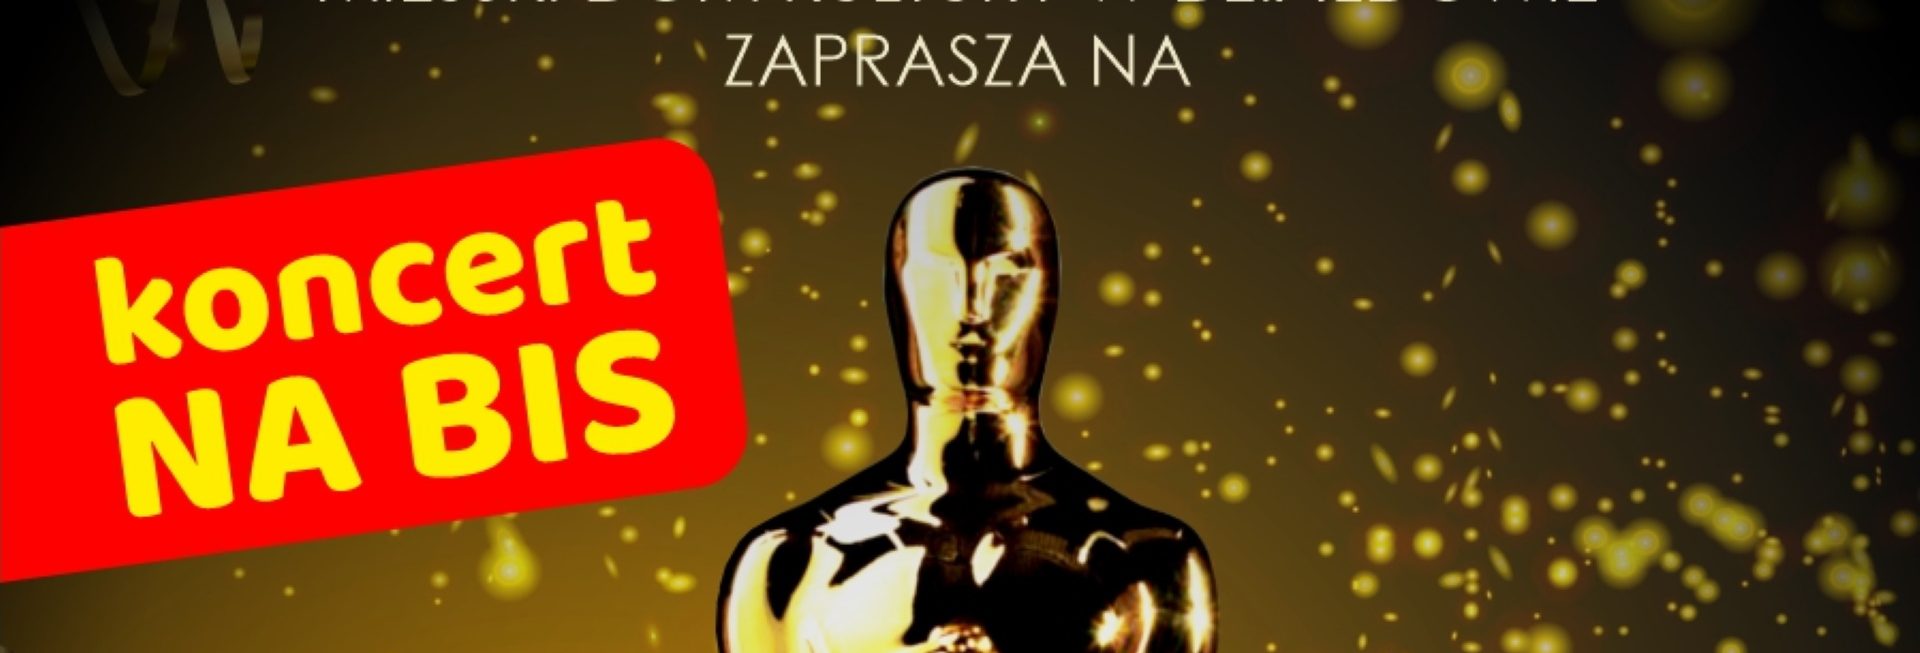 Plakat zapraszający do Działdowa na koncert na bis „Muzyczne Oscary - Koncert Muzyki Filmowej” Działdowo 2022.